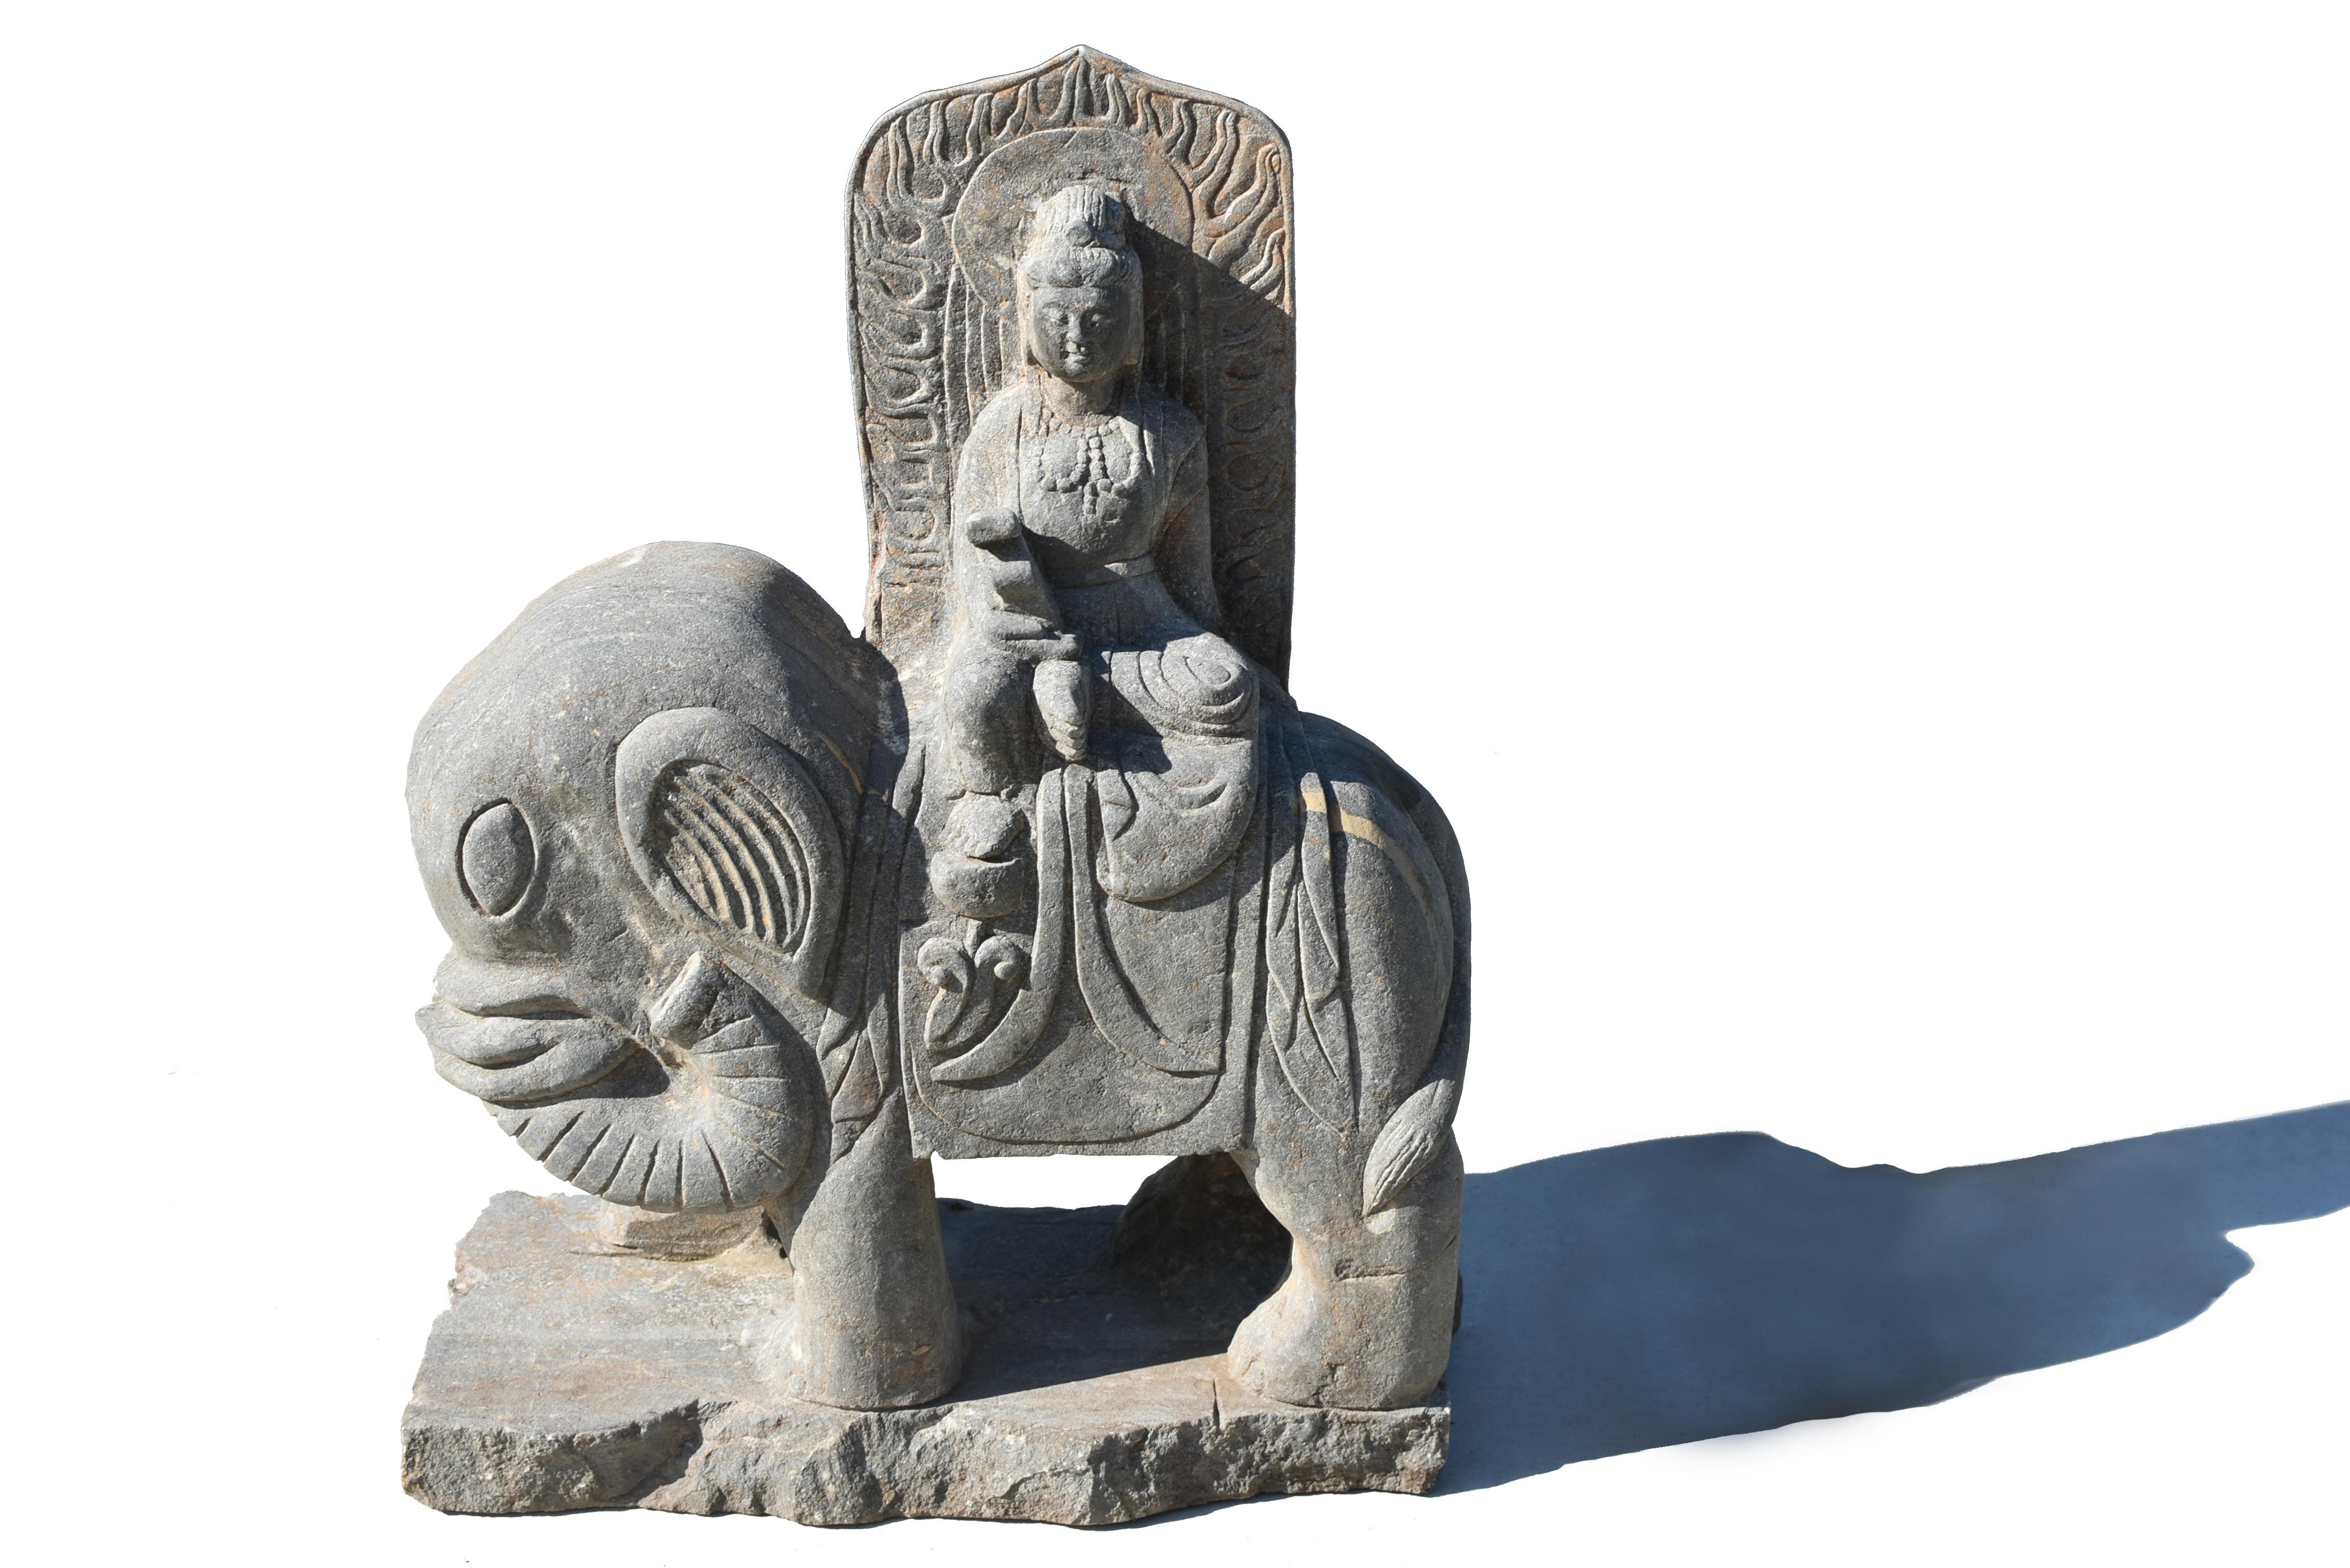 Grande statue de Bouddha Samantabhadra Pu Hsien (Xian) en pierre massive, sculptée à la main, assise en position de lalita asana. Le visage large au regard bienveillant, les yeux baissés encadrés par des oreilles à long lobes et des cheveux